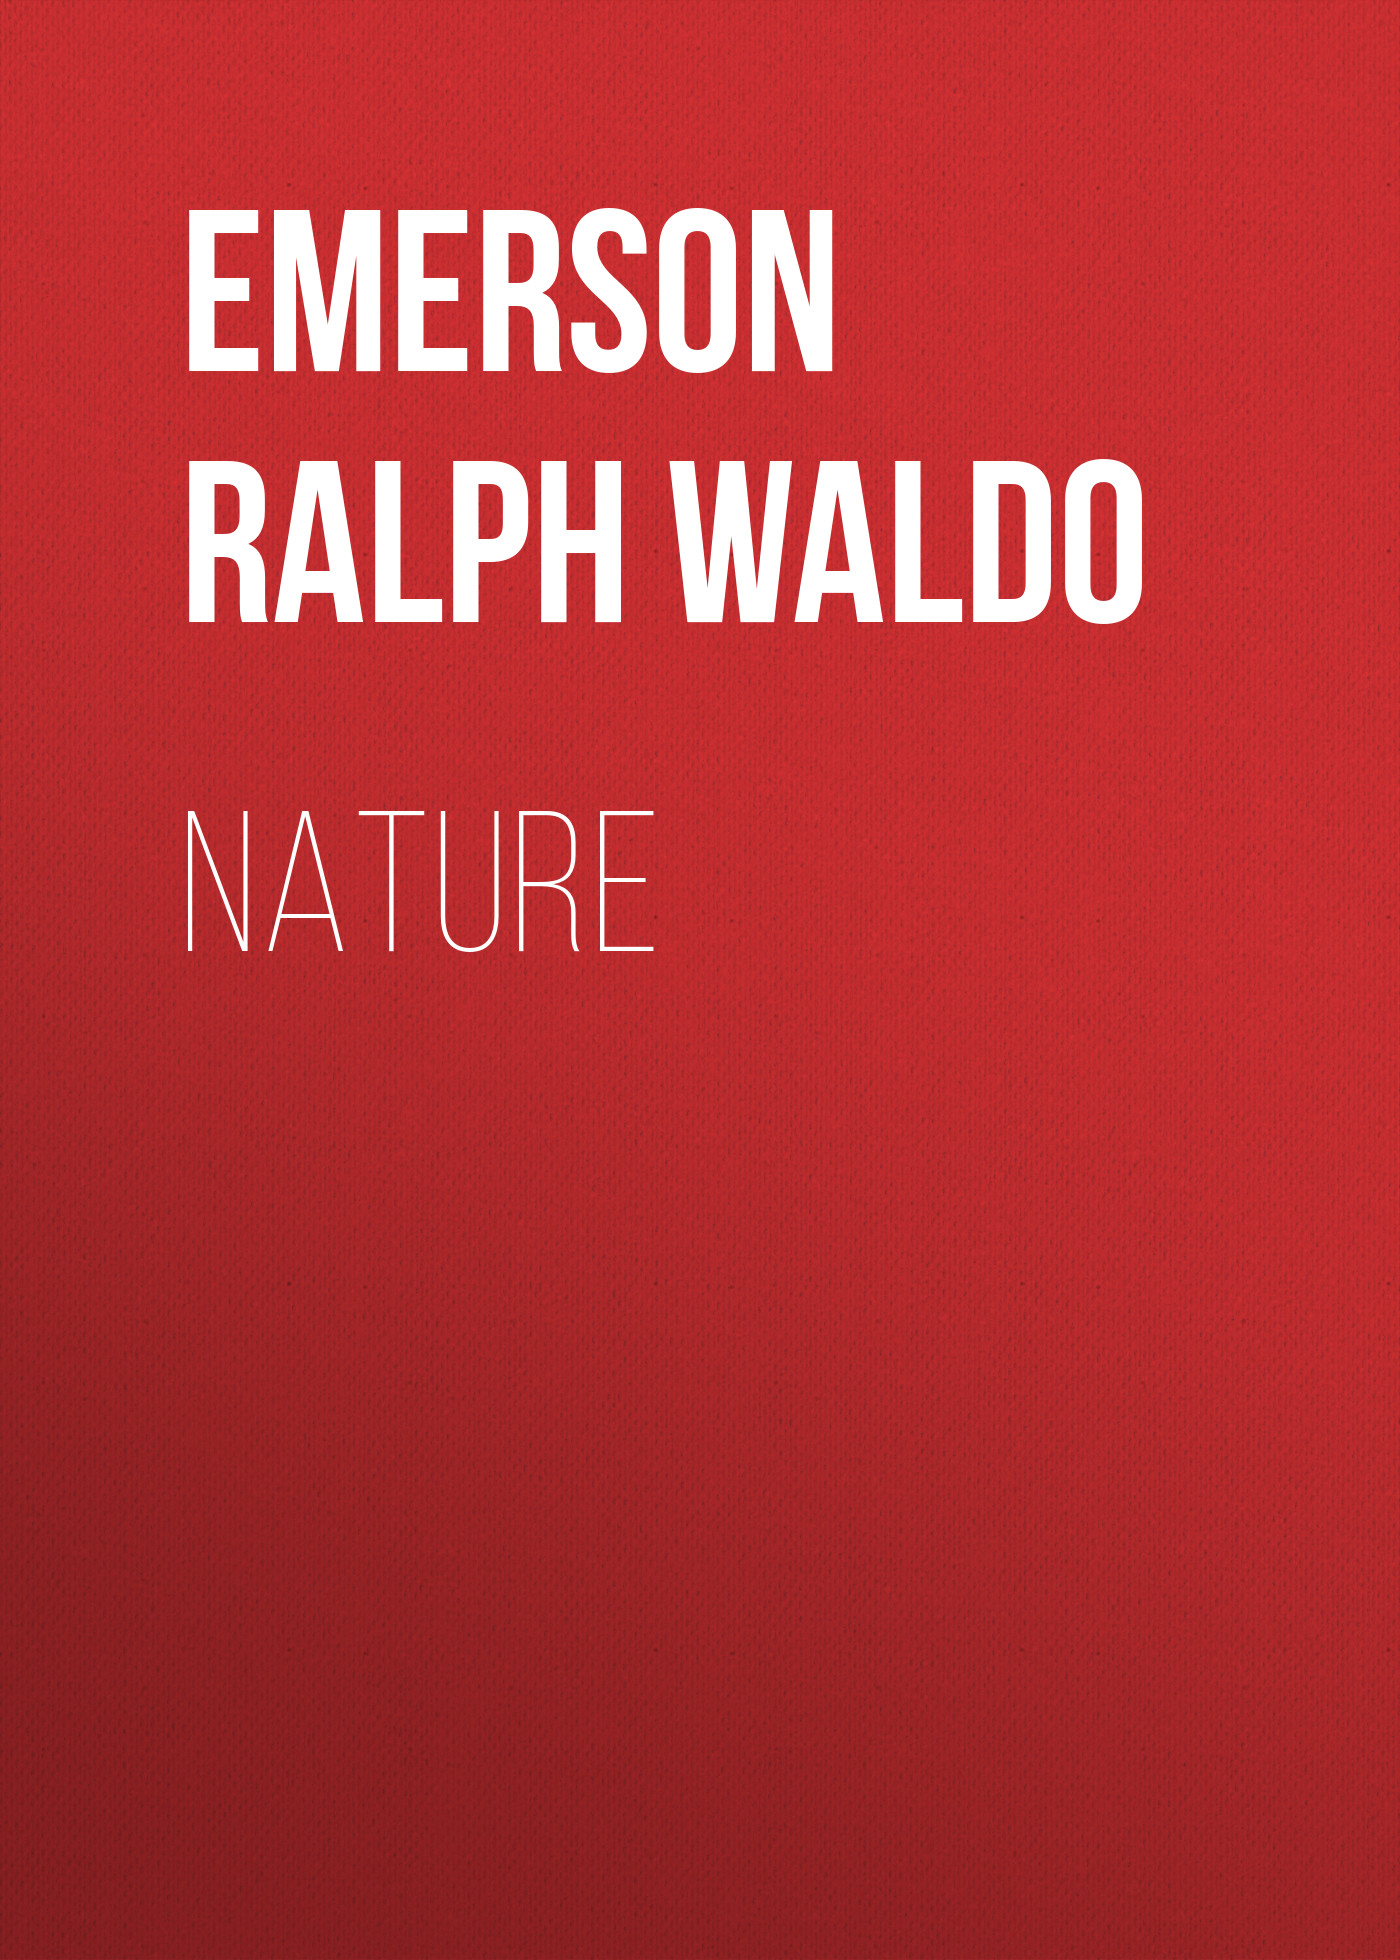 Книга Nature из серии , созданная Ralph Emerson, может относится к жанру Природа и животные, Зарубежная старинная литература, Зарубежная классика. Стоимость книги Nature  с идентификатором 24713785 составляет 0 руб.